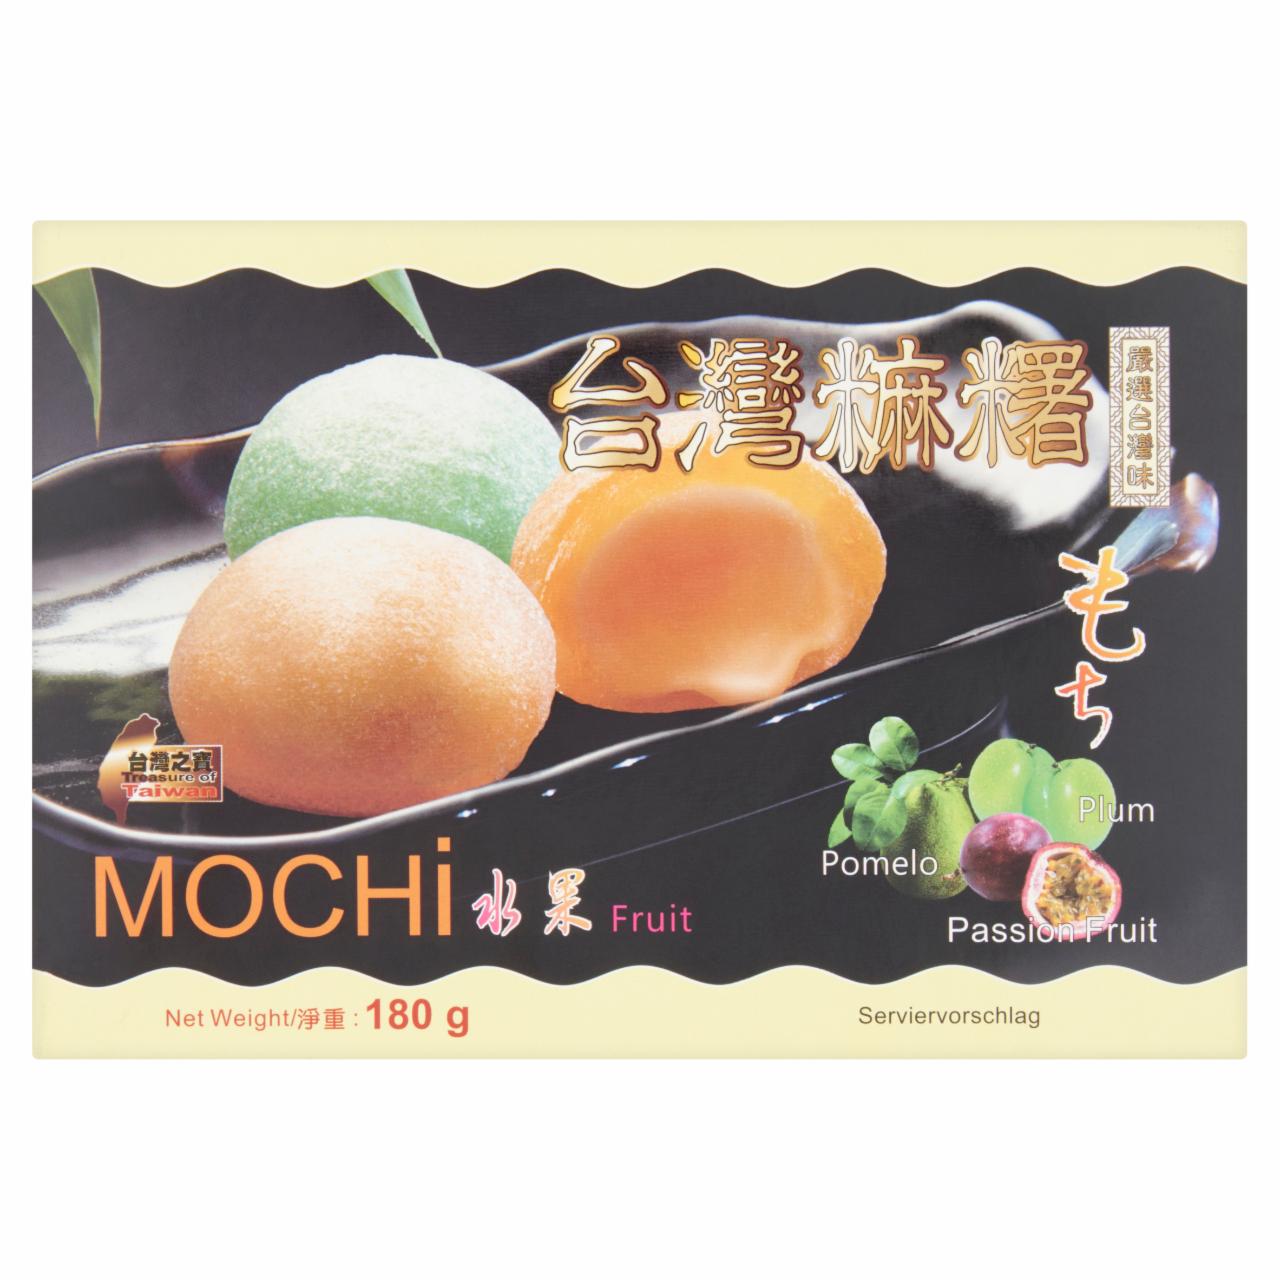 Képek - Szilva, pomelo és maracuja ízű ázsiai mochi édesség 180 g